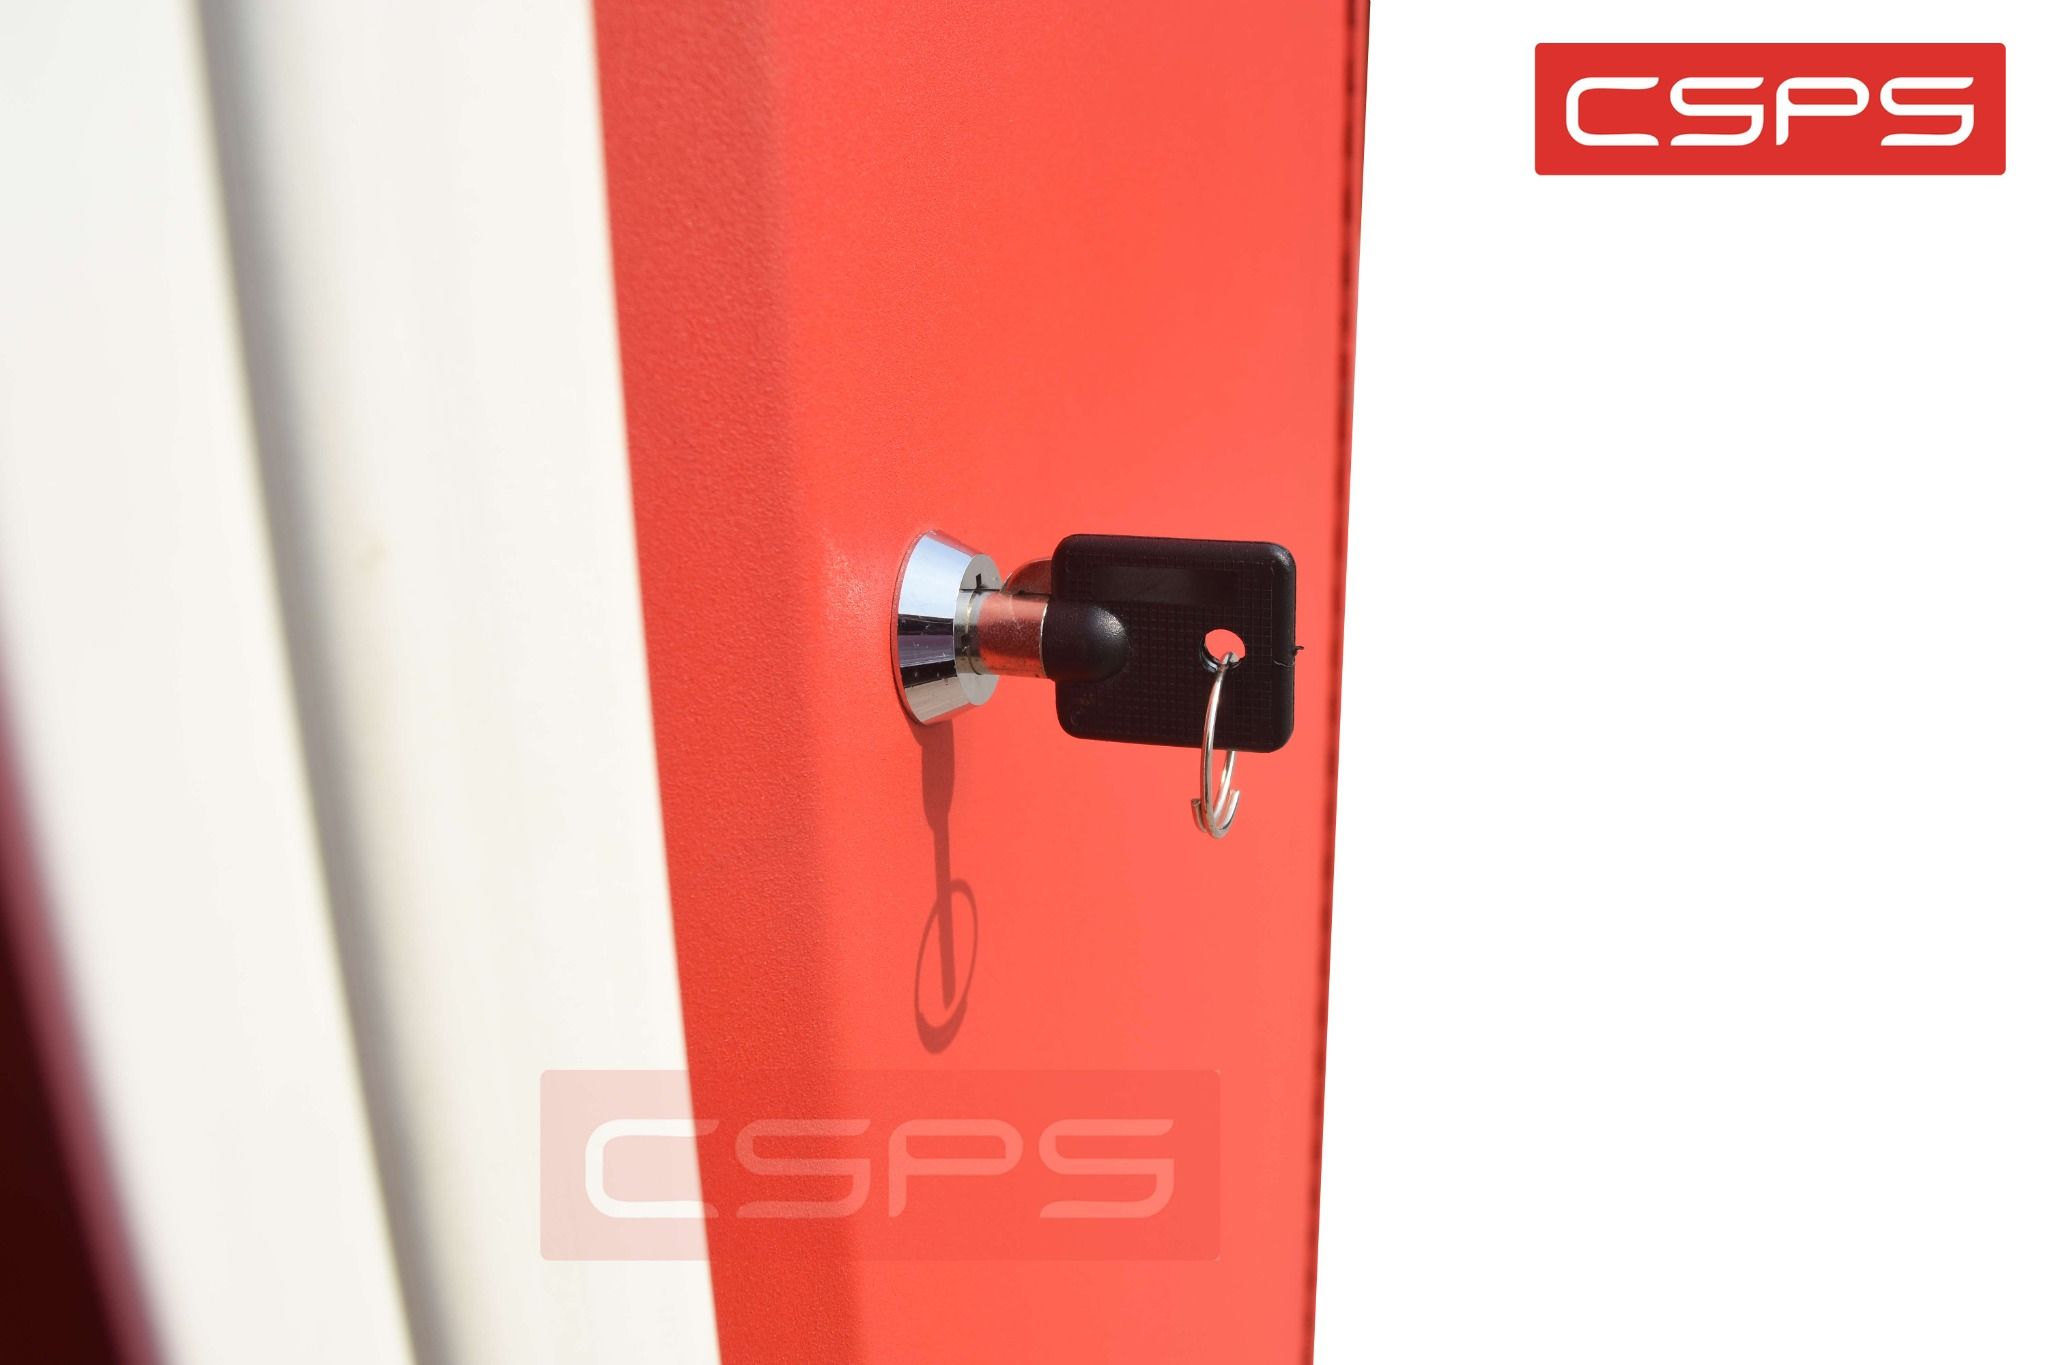  Tủ dụng cụ CSPS 91cm đen/đỏ - 02 ngăn 